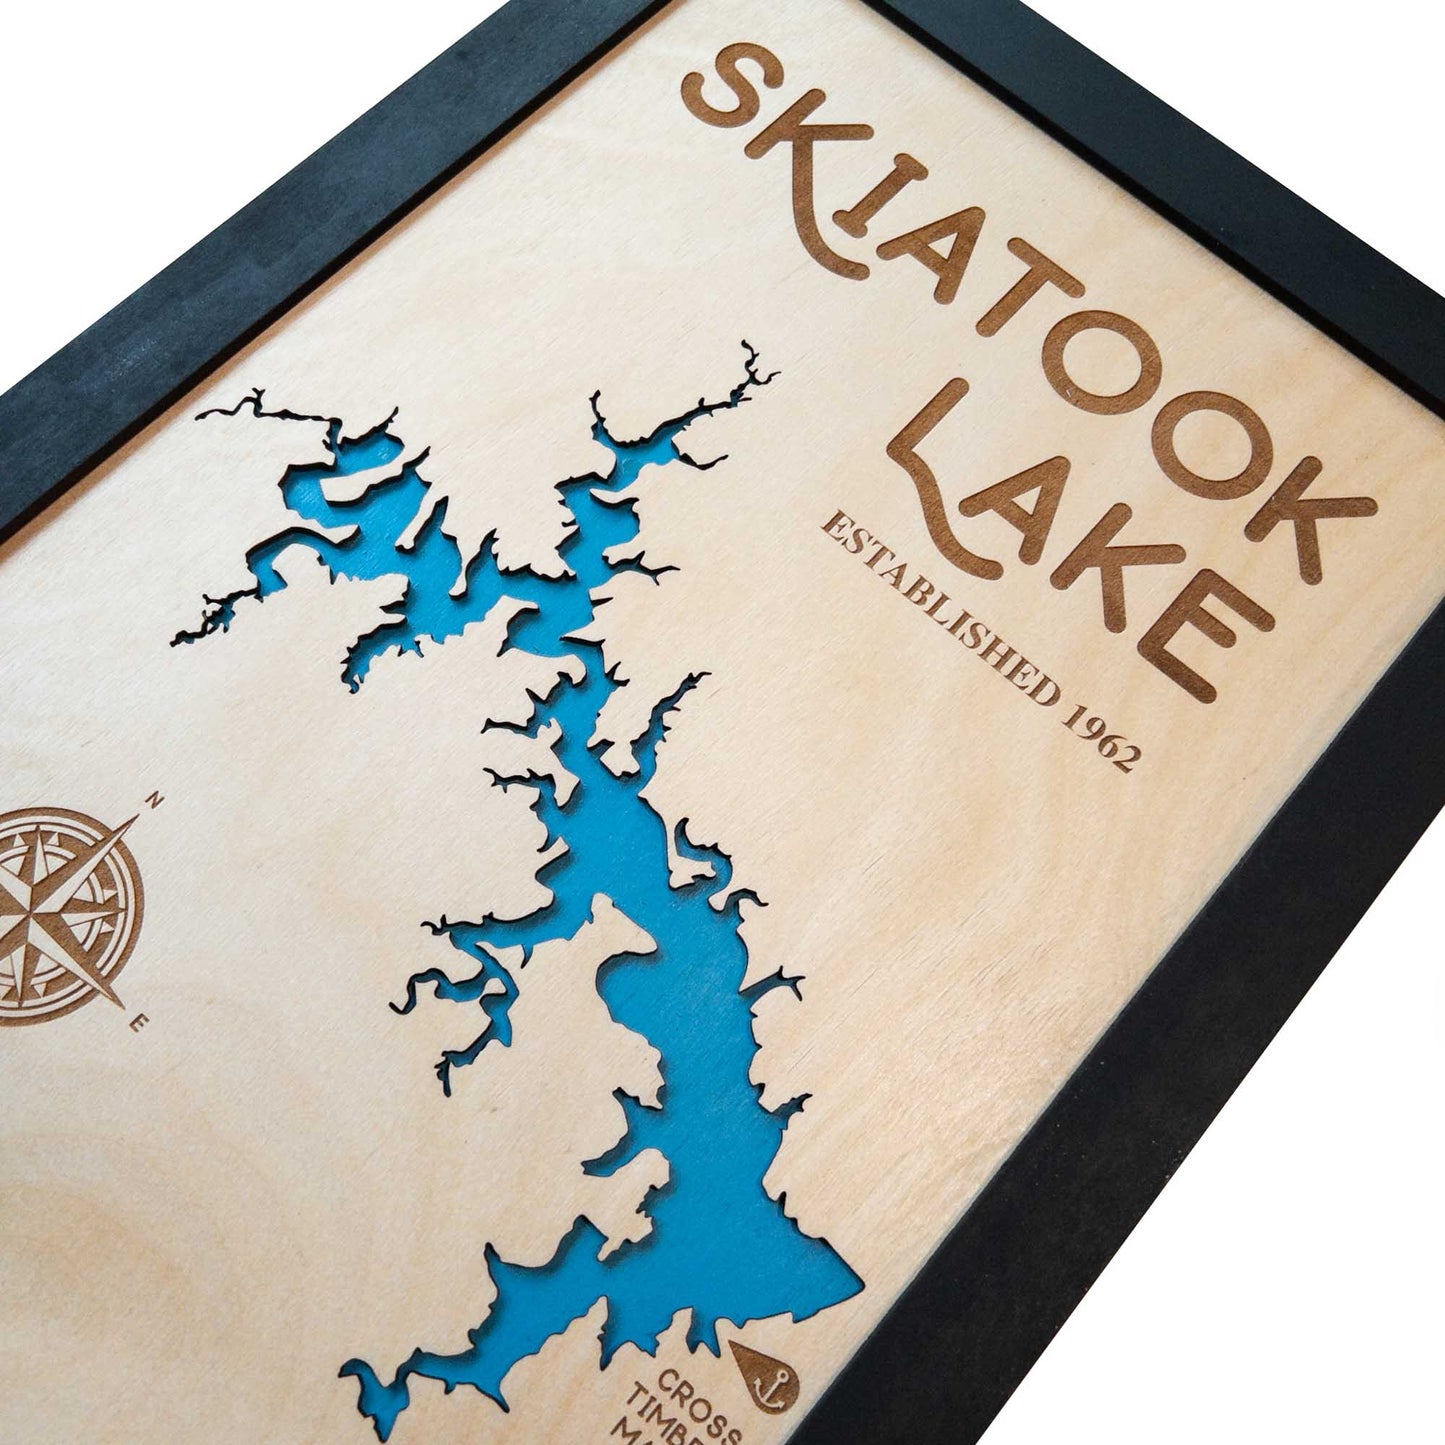 Skiatook Lake Map